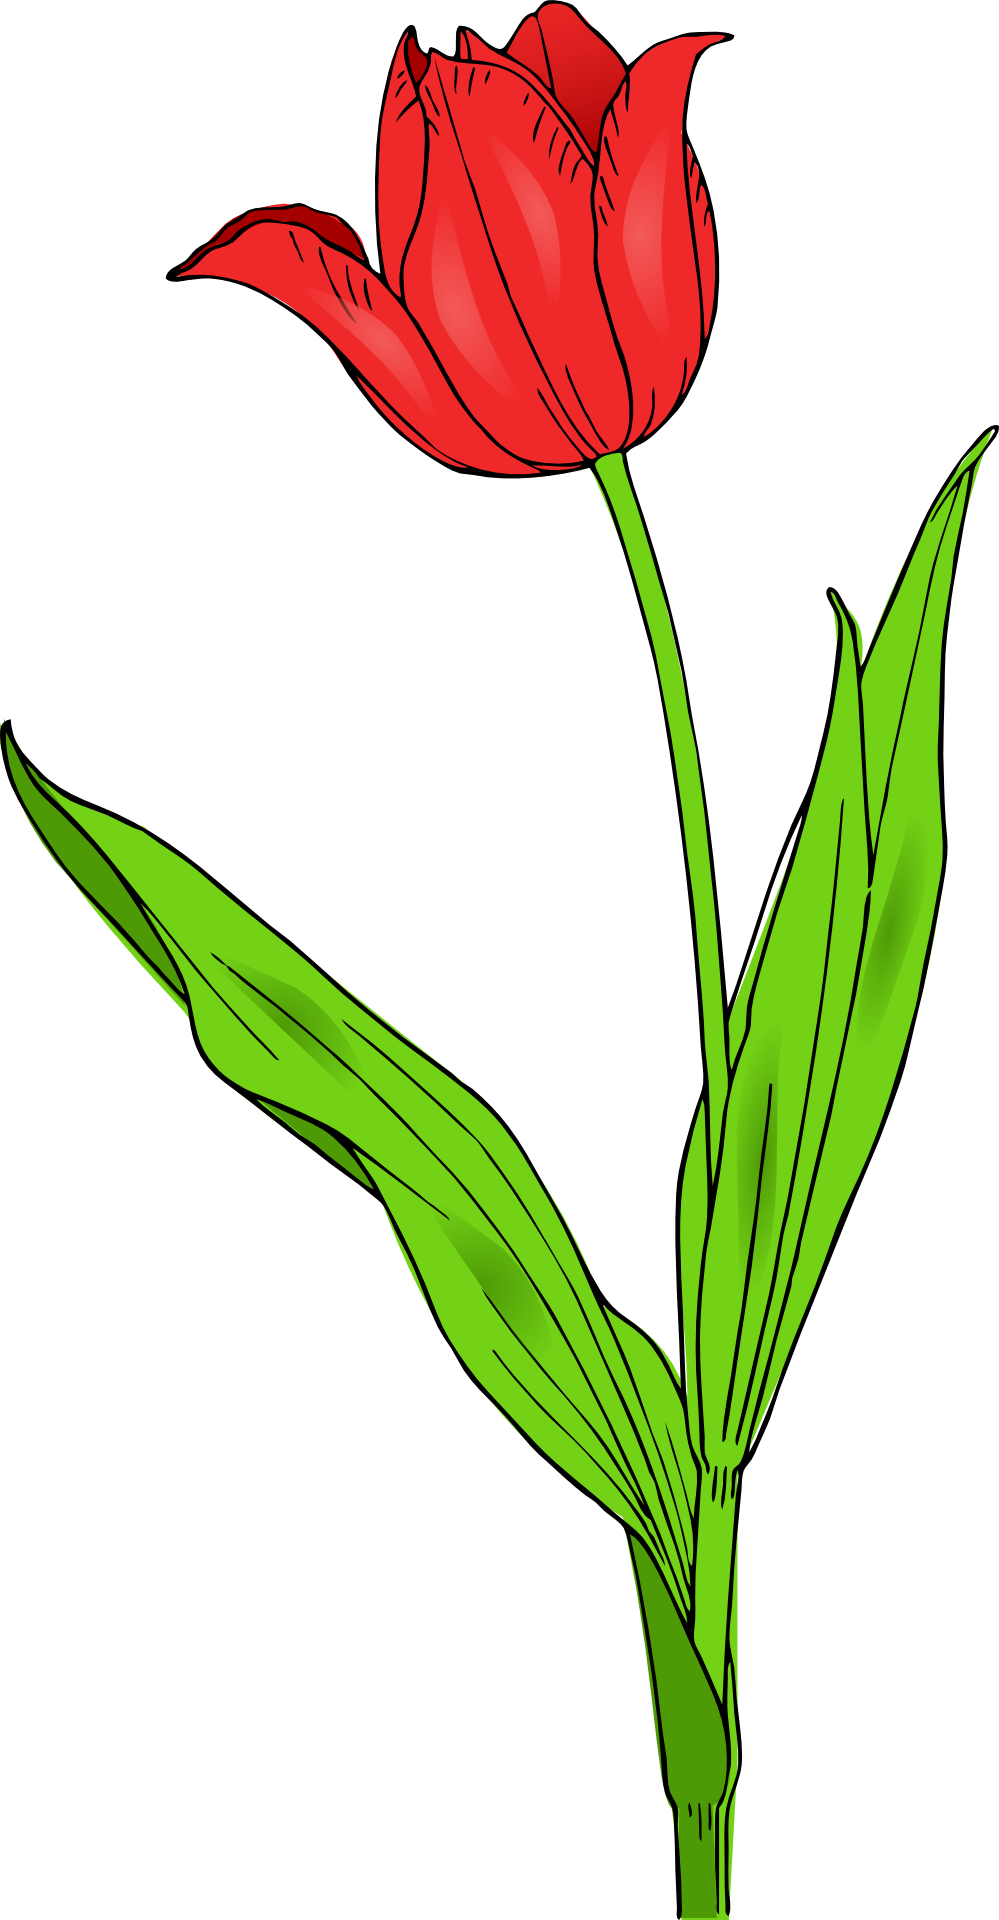 Flowers For > Single Spring Flower Clip Art